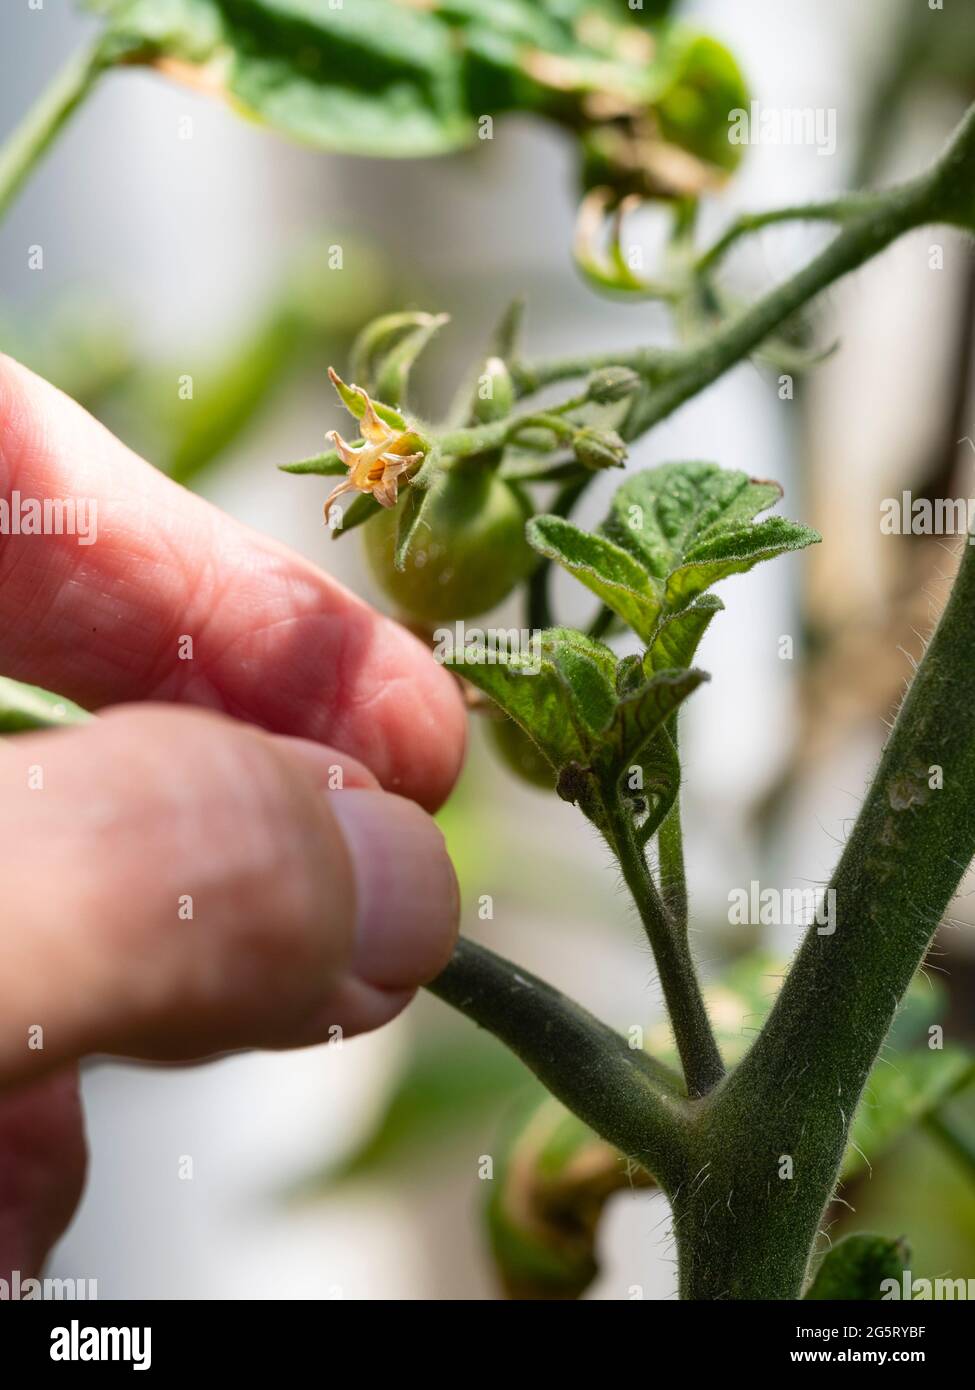 Préparation de l'élimination de la pousse latérale de la tomate en cordon indéterminée Solanum lycopersicum 'Outdoor Girl' Banque D'Images